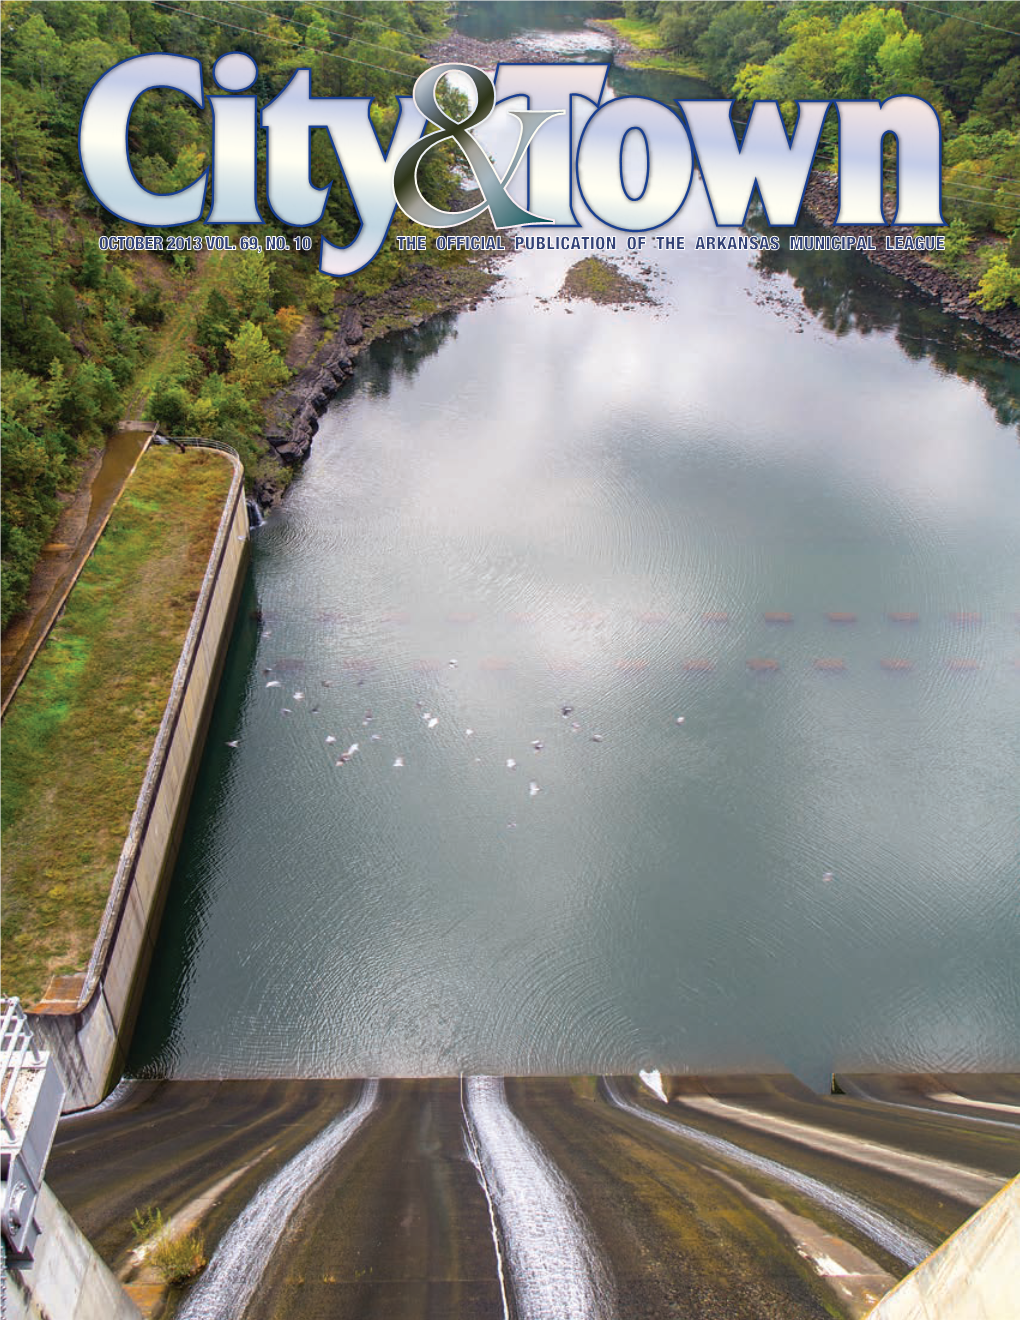 City & Town, October 2013 Vol. 69, No. 10